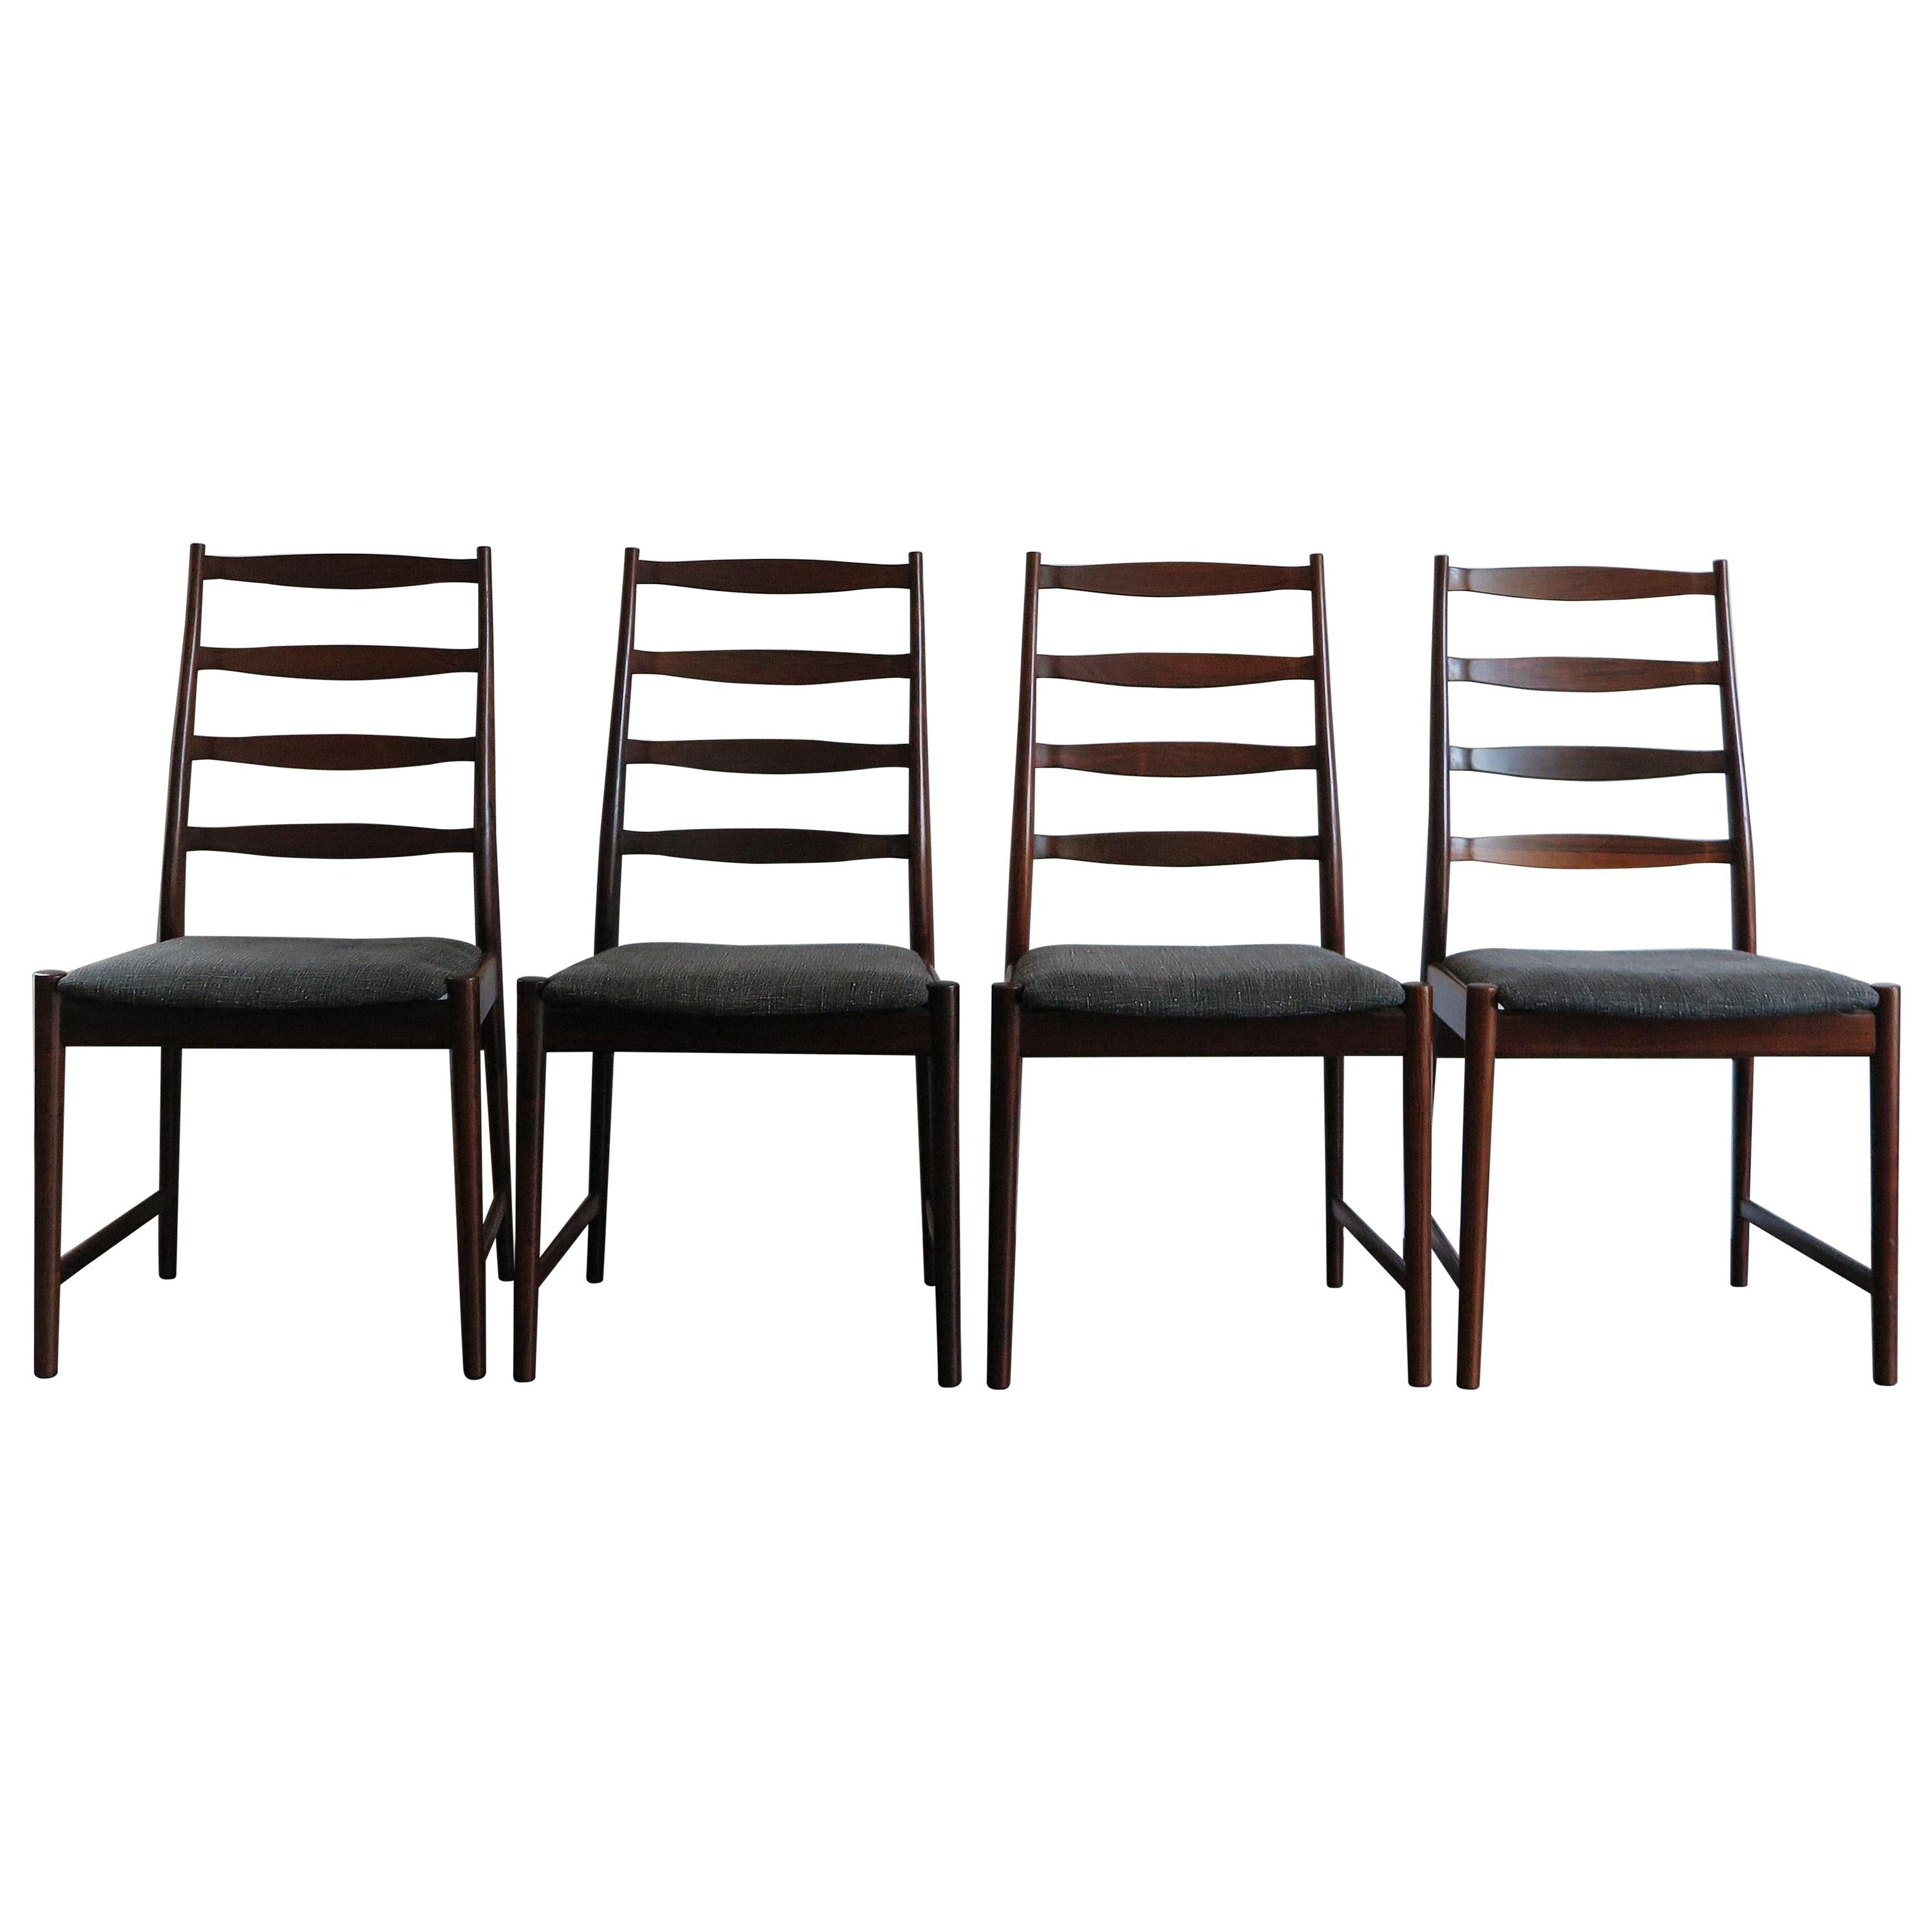 Arne Vodder Mid-Century Modern Scandinavian Dark Wood Dining Chairs, 1960s For Sale